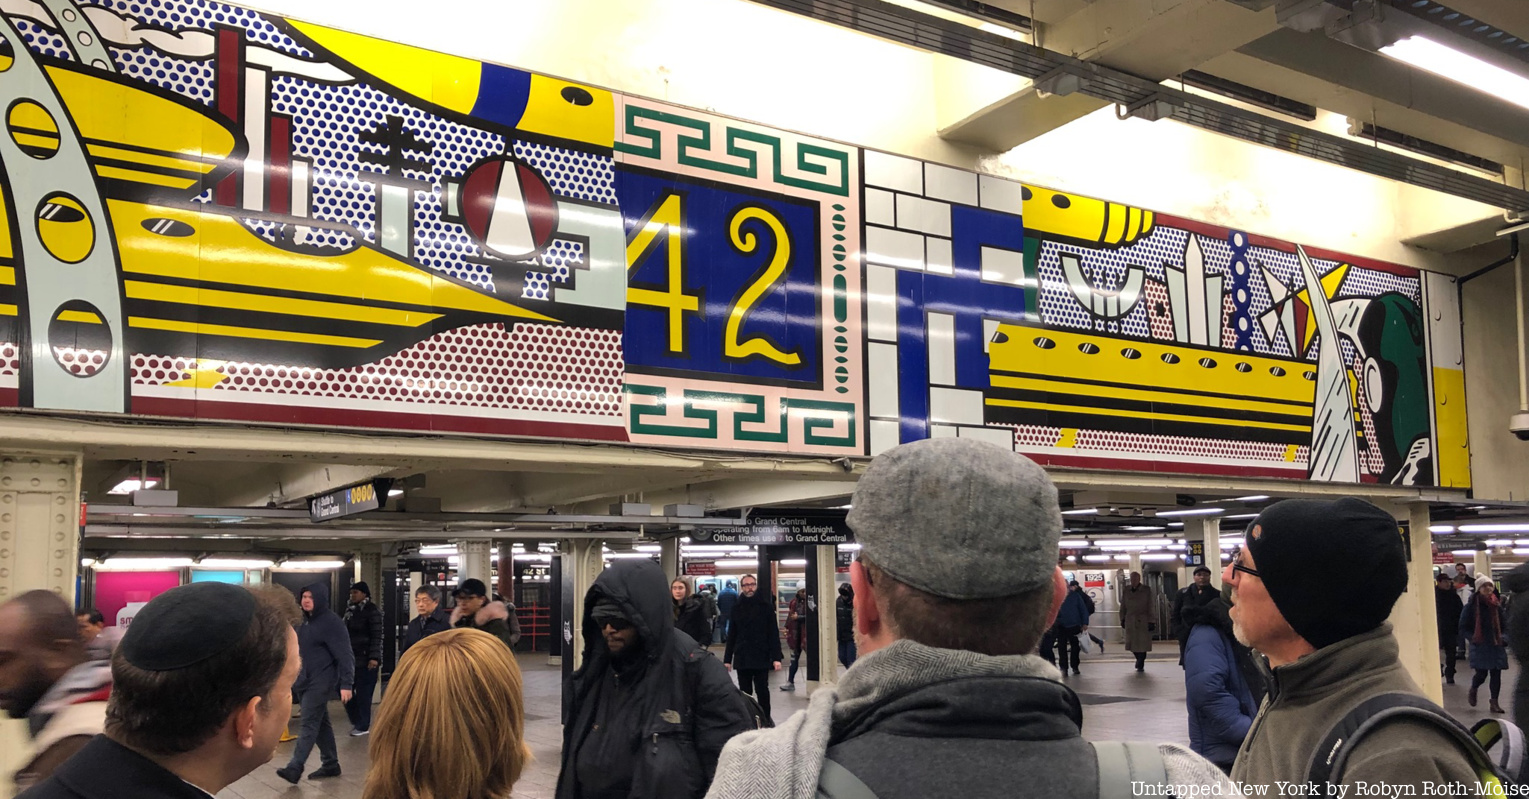 Roy Lichtenstein art tin the Times Square Subway